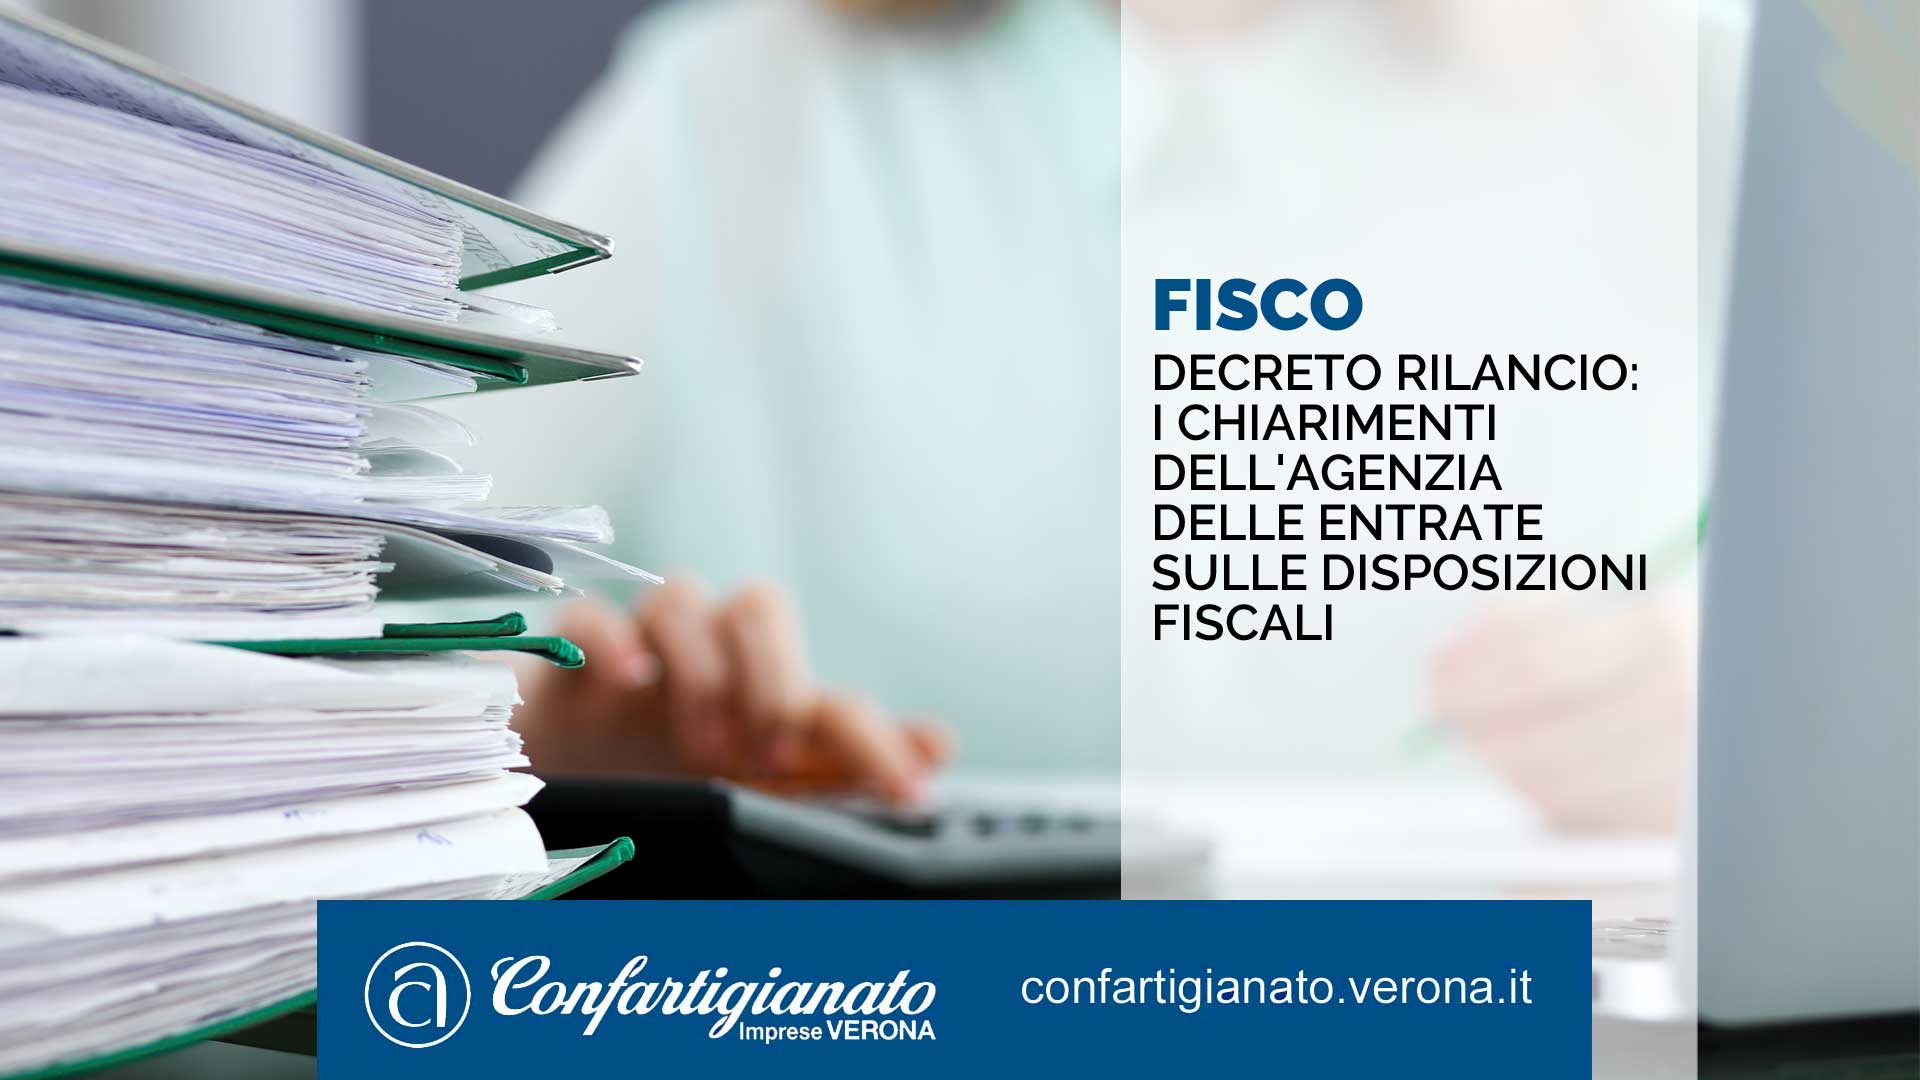 FISCO - Decreto Rilancio: i chiarimenti dell'Agenzia delle Entrate sulle disposizioni fiscali